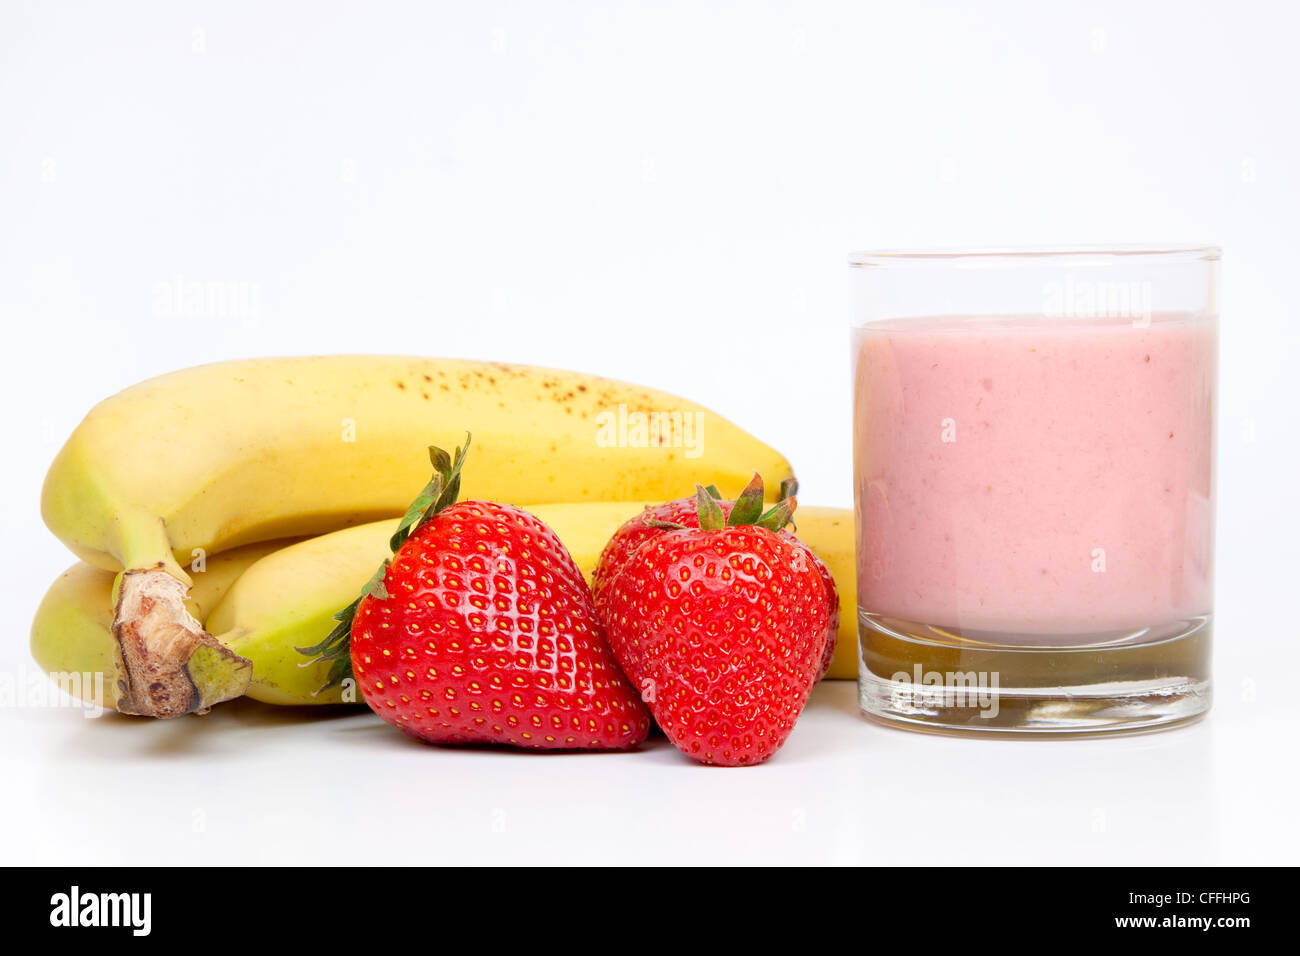 Gruppe von Bananen und Erdbeeren mit einem Kopfschütteln Erdbeeren und Milch auf einem weißen Hintergrund. Stockfoto